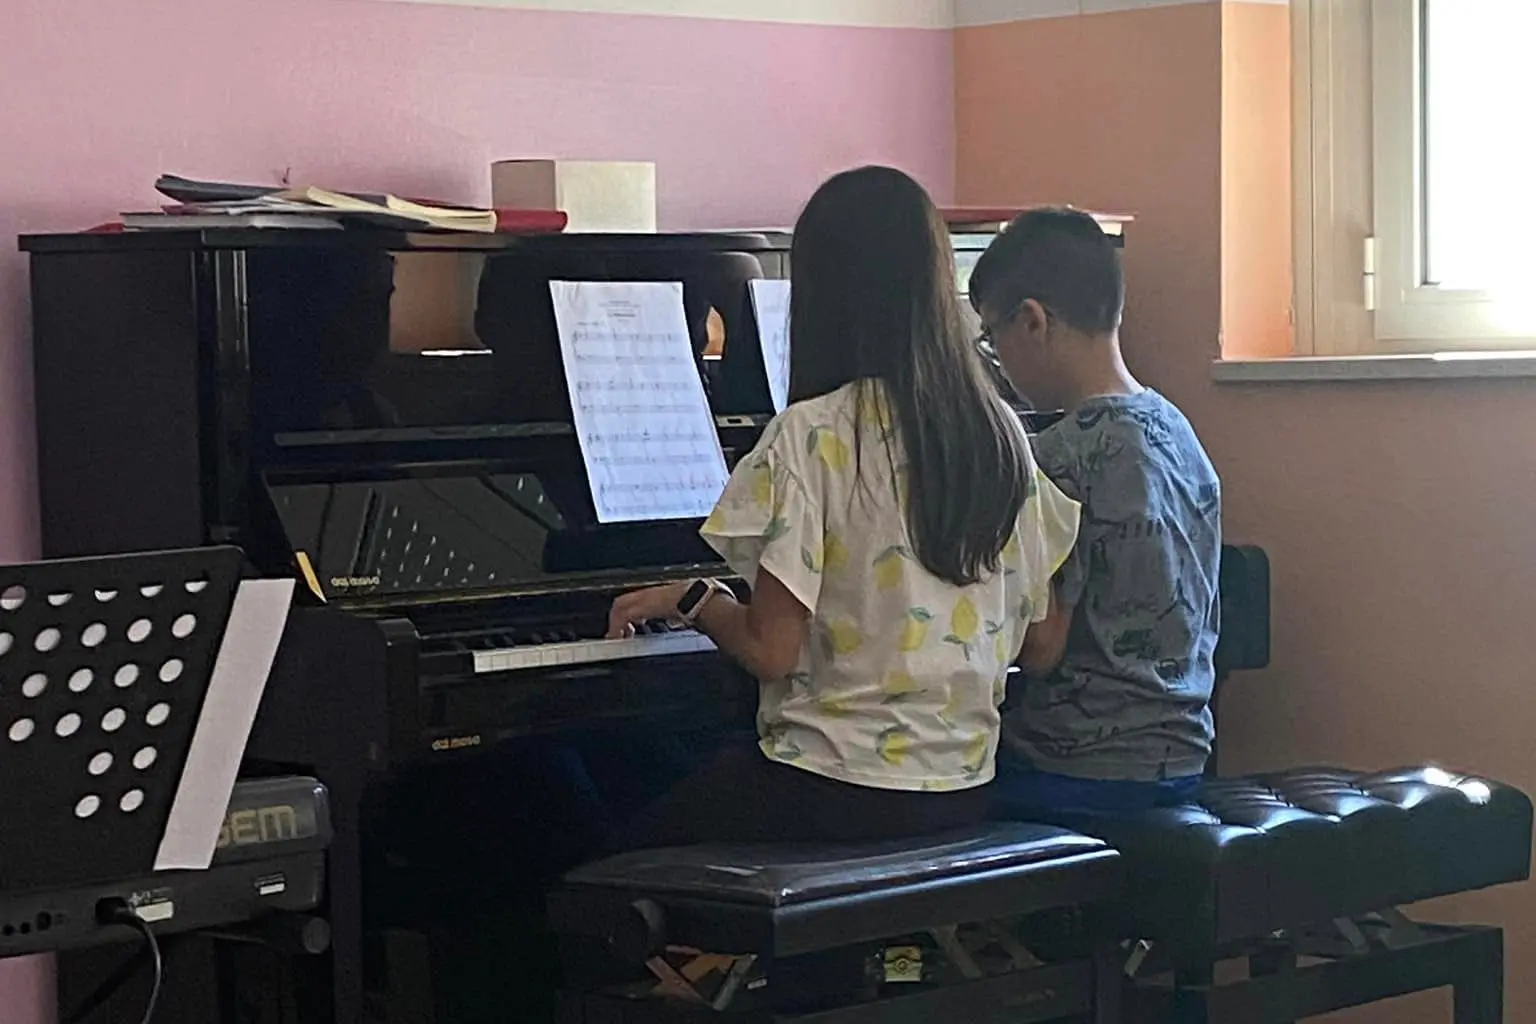 Il pianoforte donato alla scuola (foto Serreli)